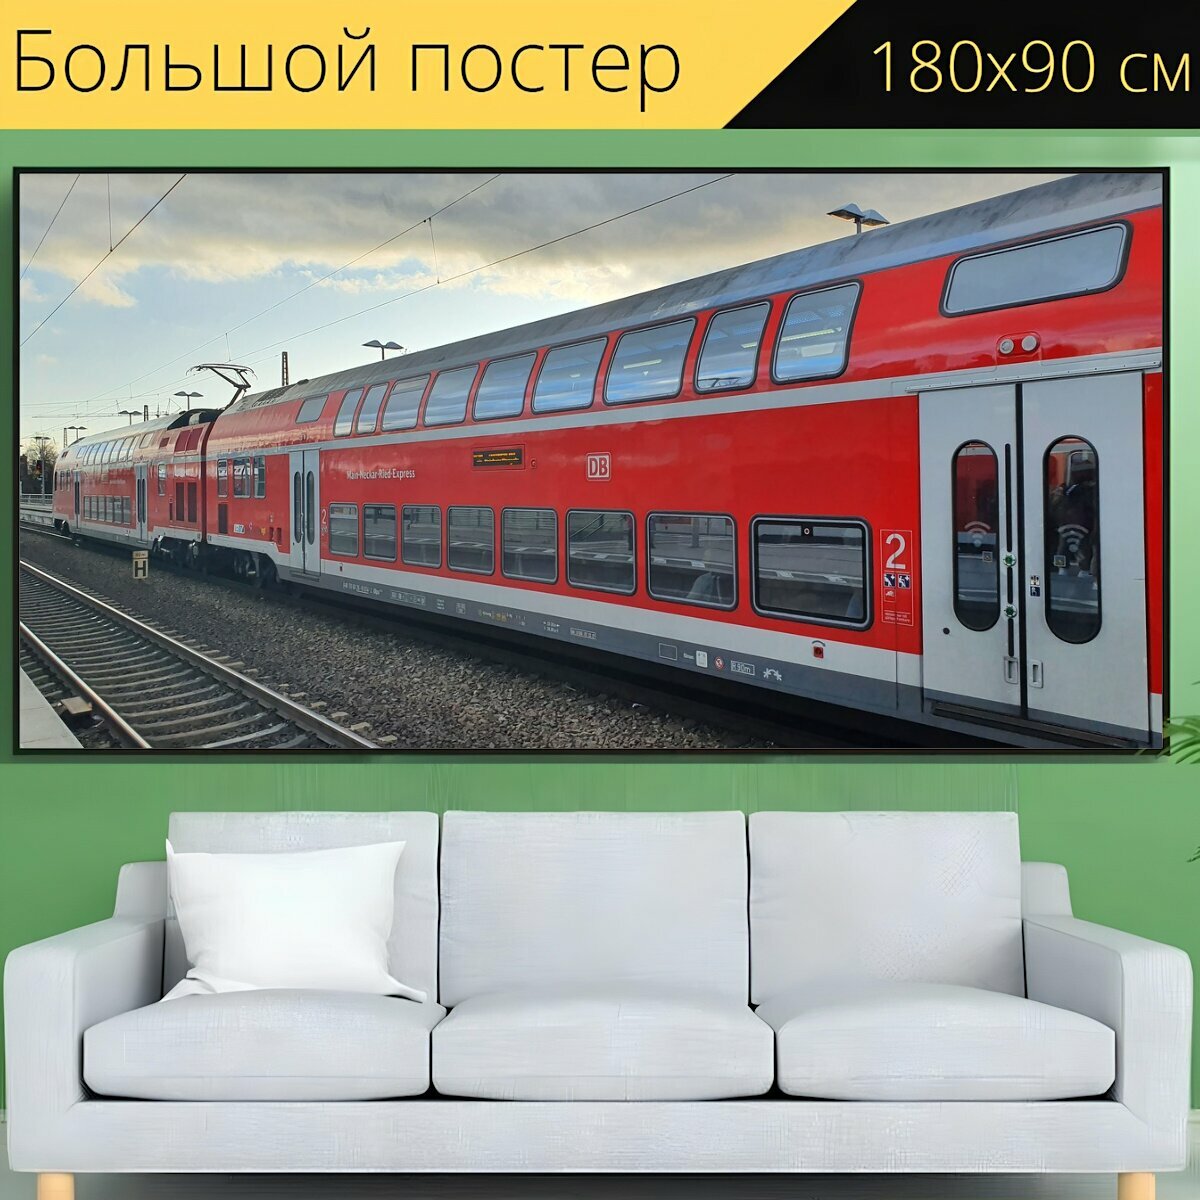 Большой постер "Поезд, железная дорога, рельсы" 180 x 90 см. для интерьера